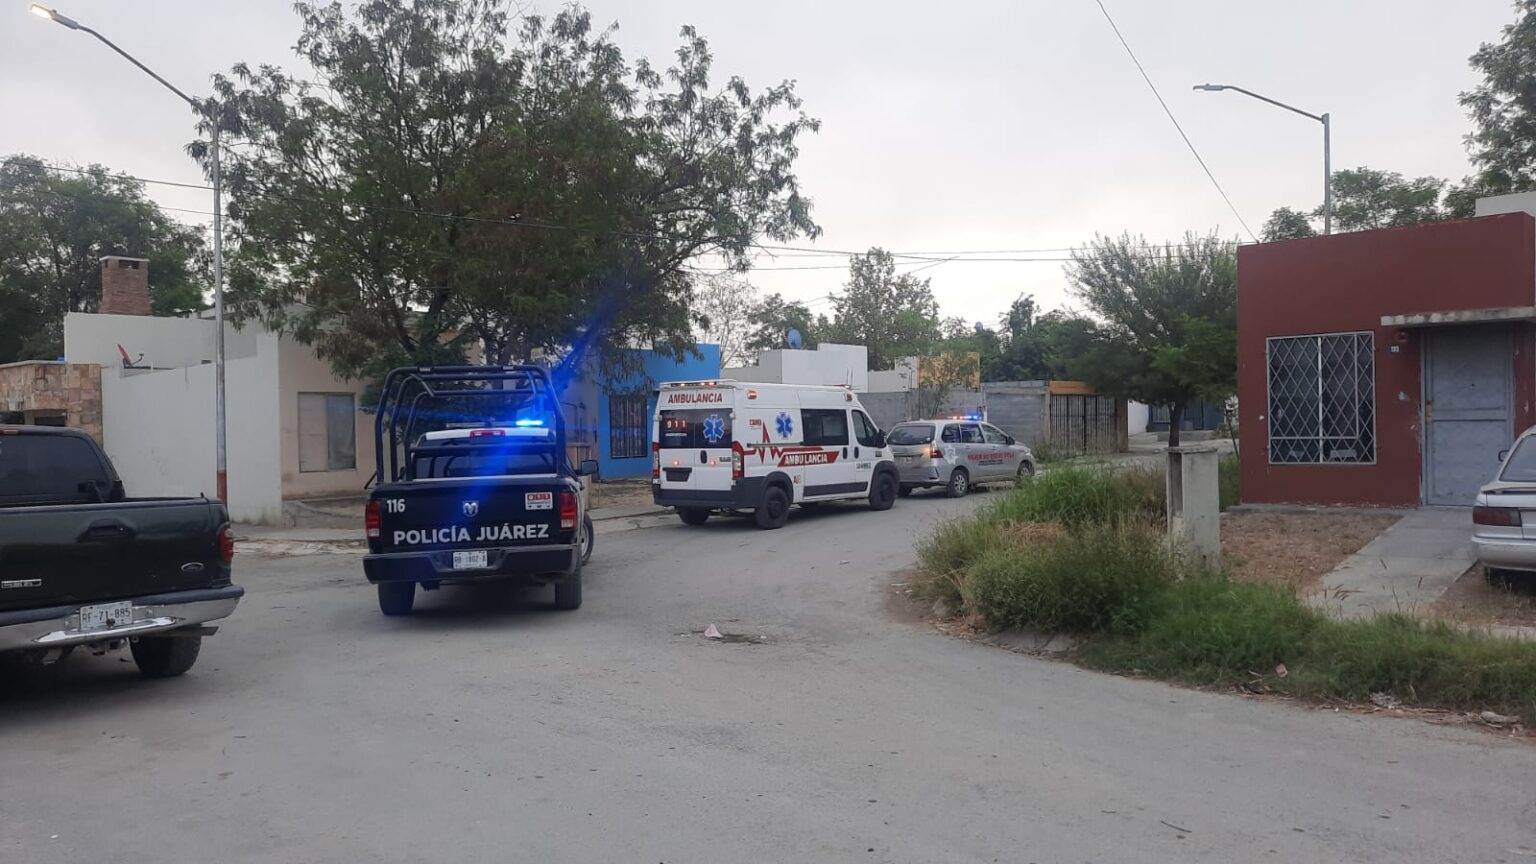 El reporte de un secuestro en proceso, provocó una intensa movilización policiaca de varias corporaciones policiacas, que se concentraron en la Colonia Hacienda San José, en el municipio de Juárez, Nuevo León